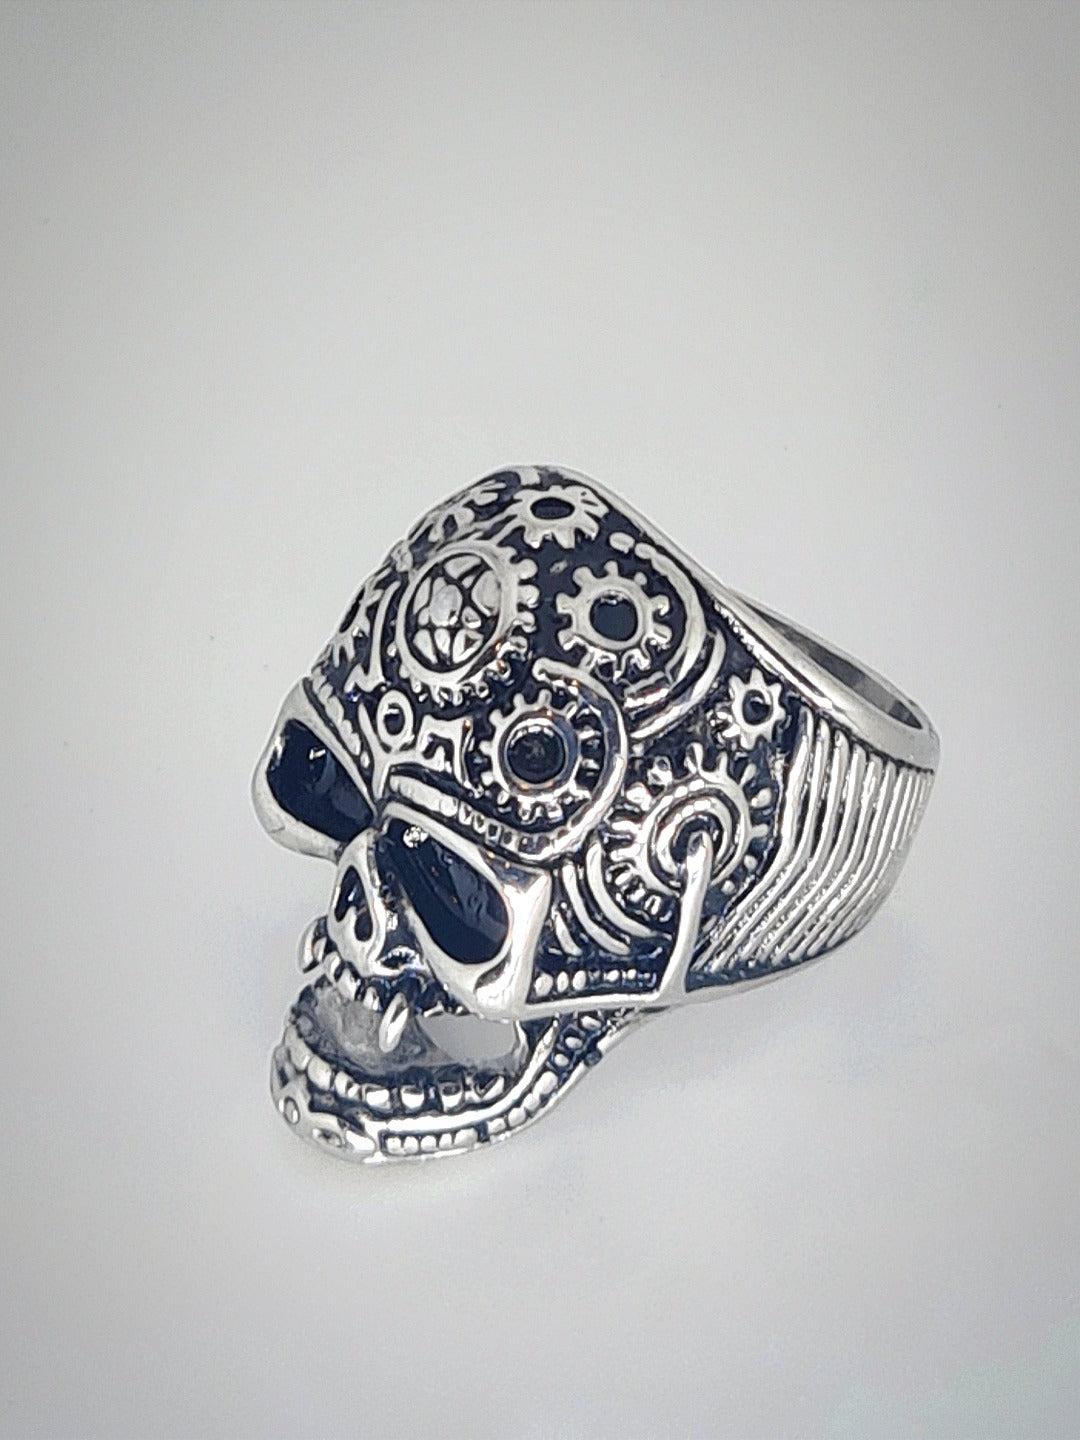 Boys Skull Ring (Silver)